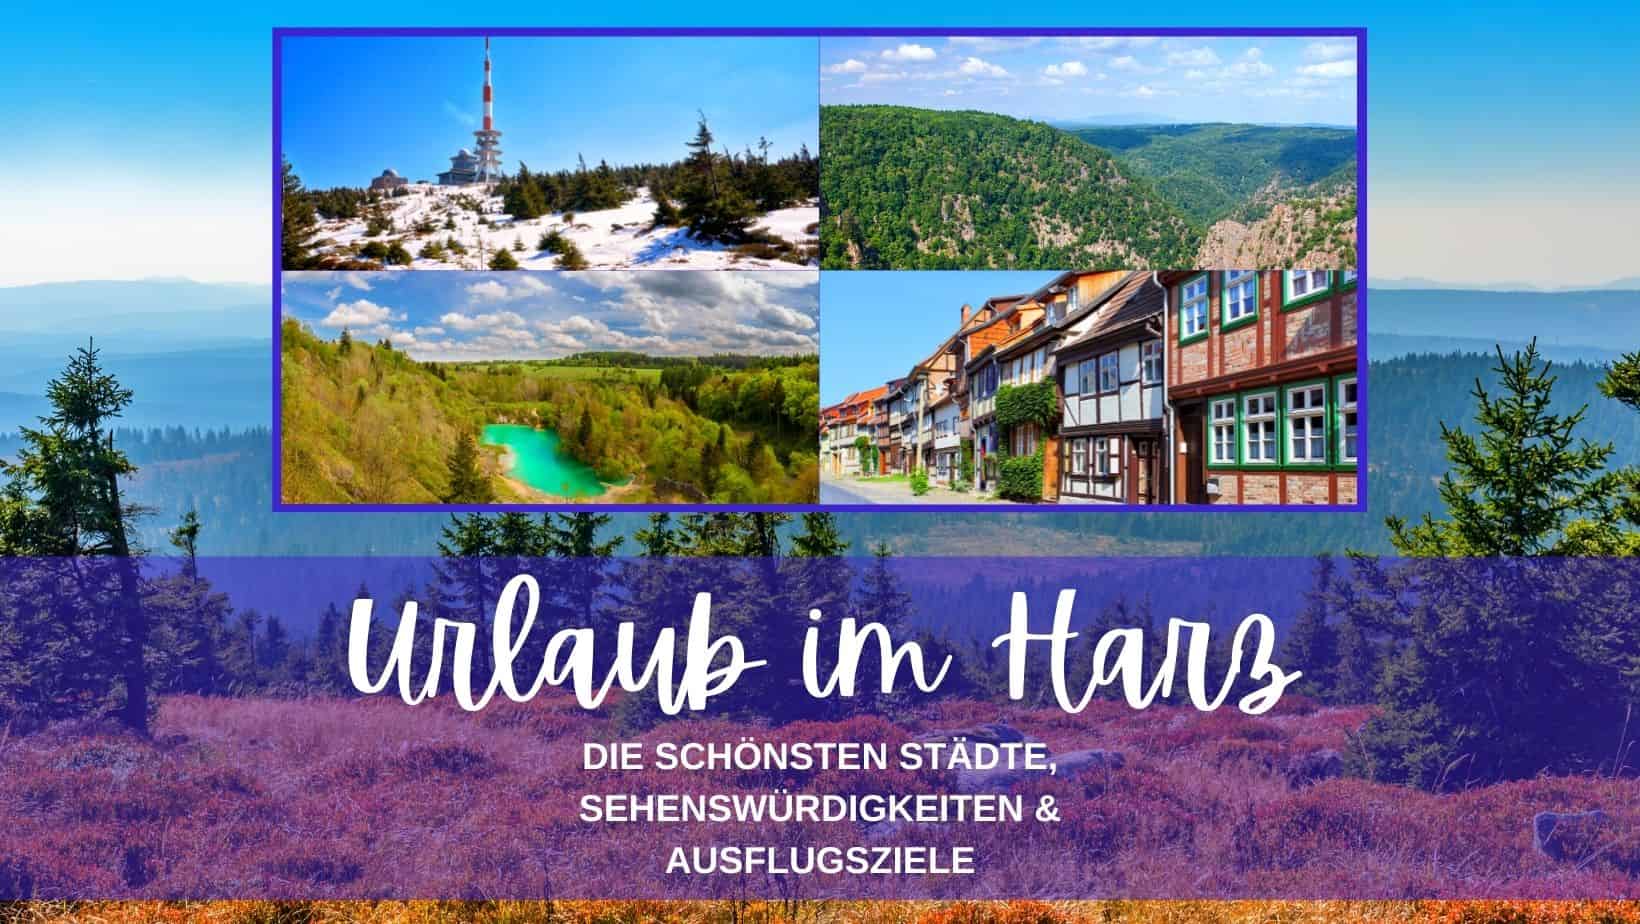 Die schönsten Städte, Sehenswürdigkeiten & Ausflugsziele im Harz